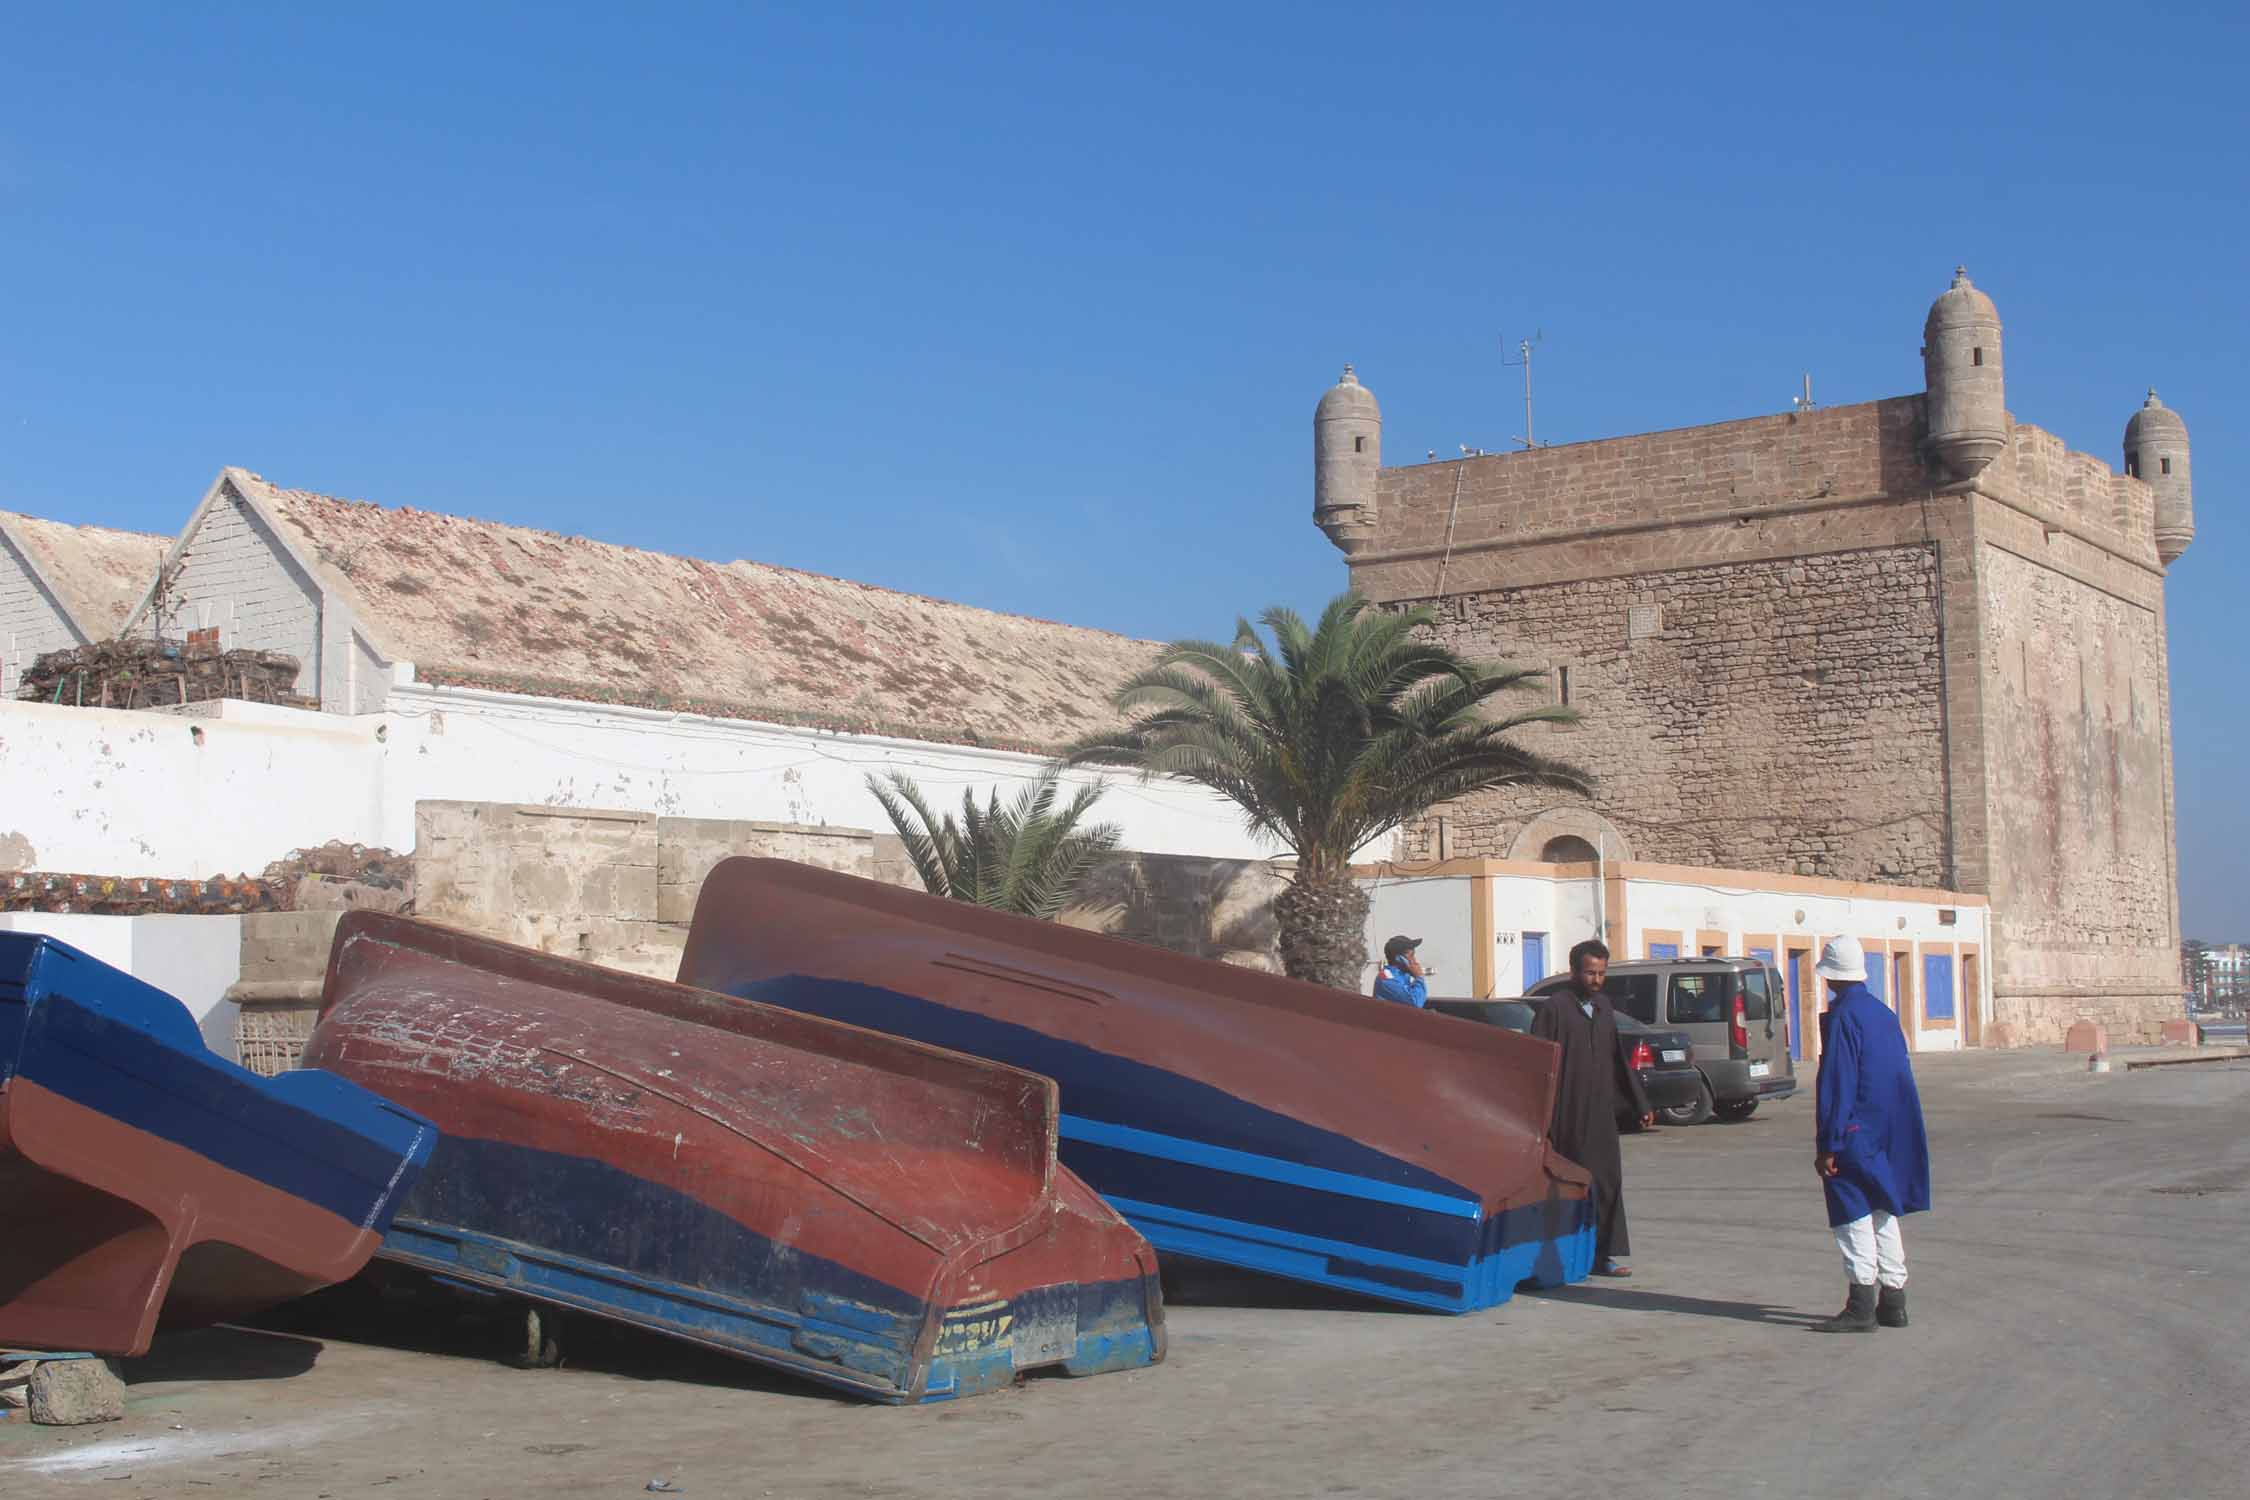 Essaouira, barques, Bab el Marsa